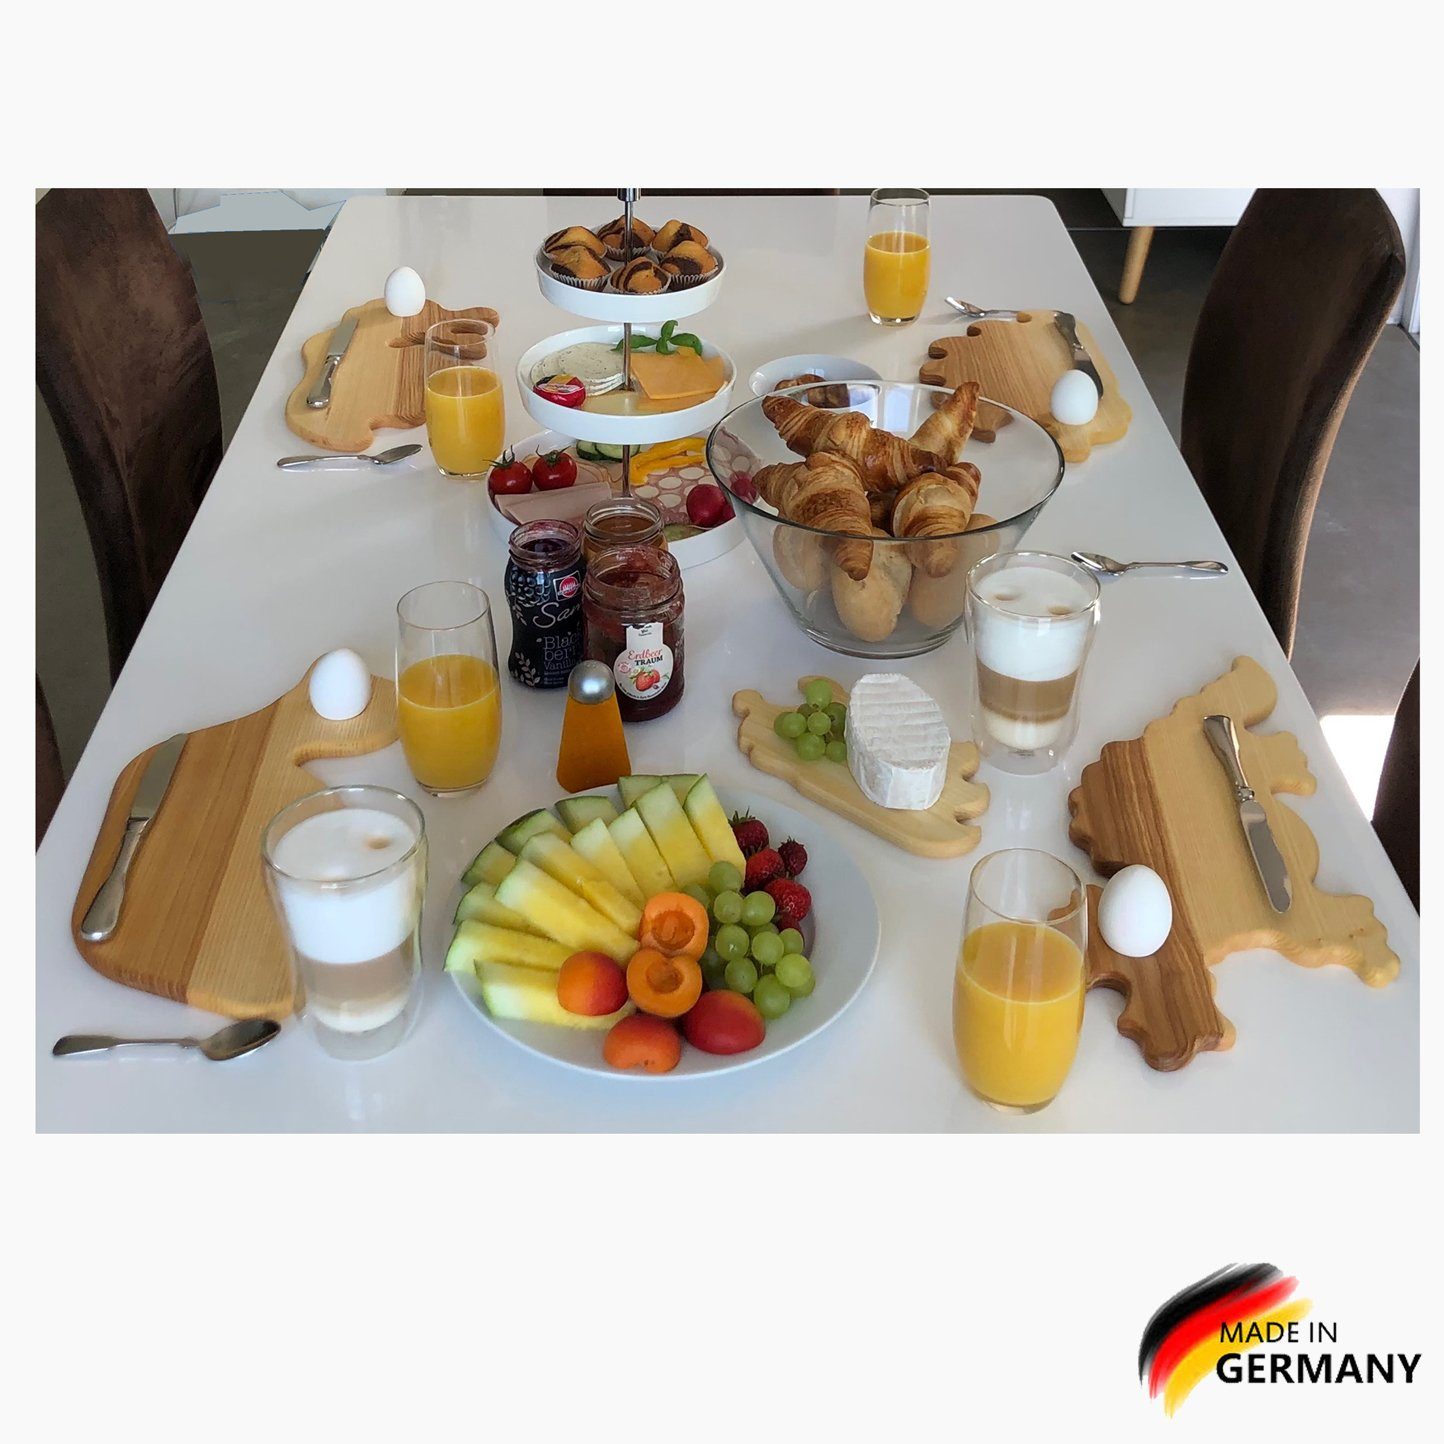 Spielzeuge Eschenholz, Eierbecher,Made in klein, Germany Igel Frühstücksbrett mit Frühstücksbrettchen Madera